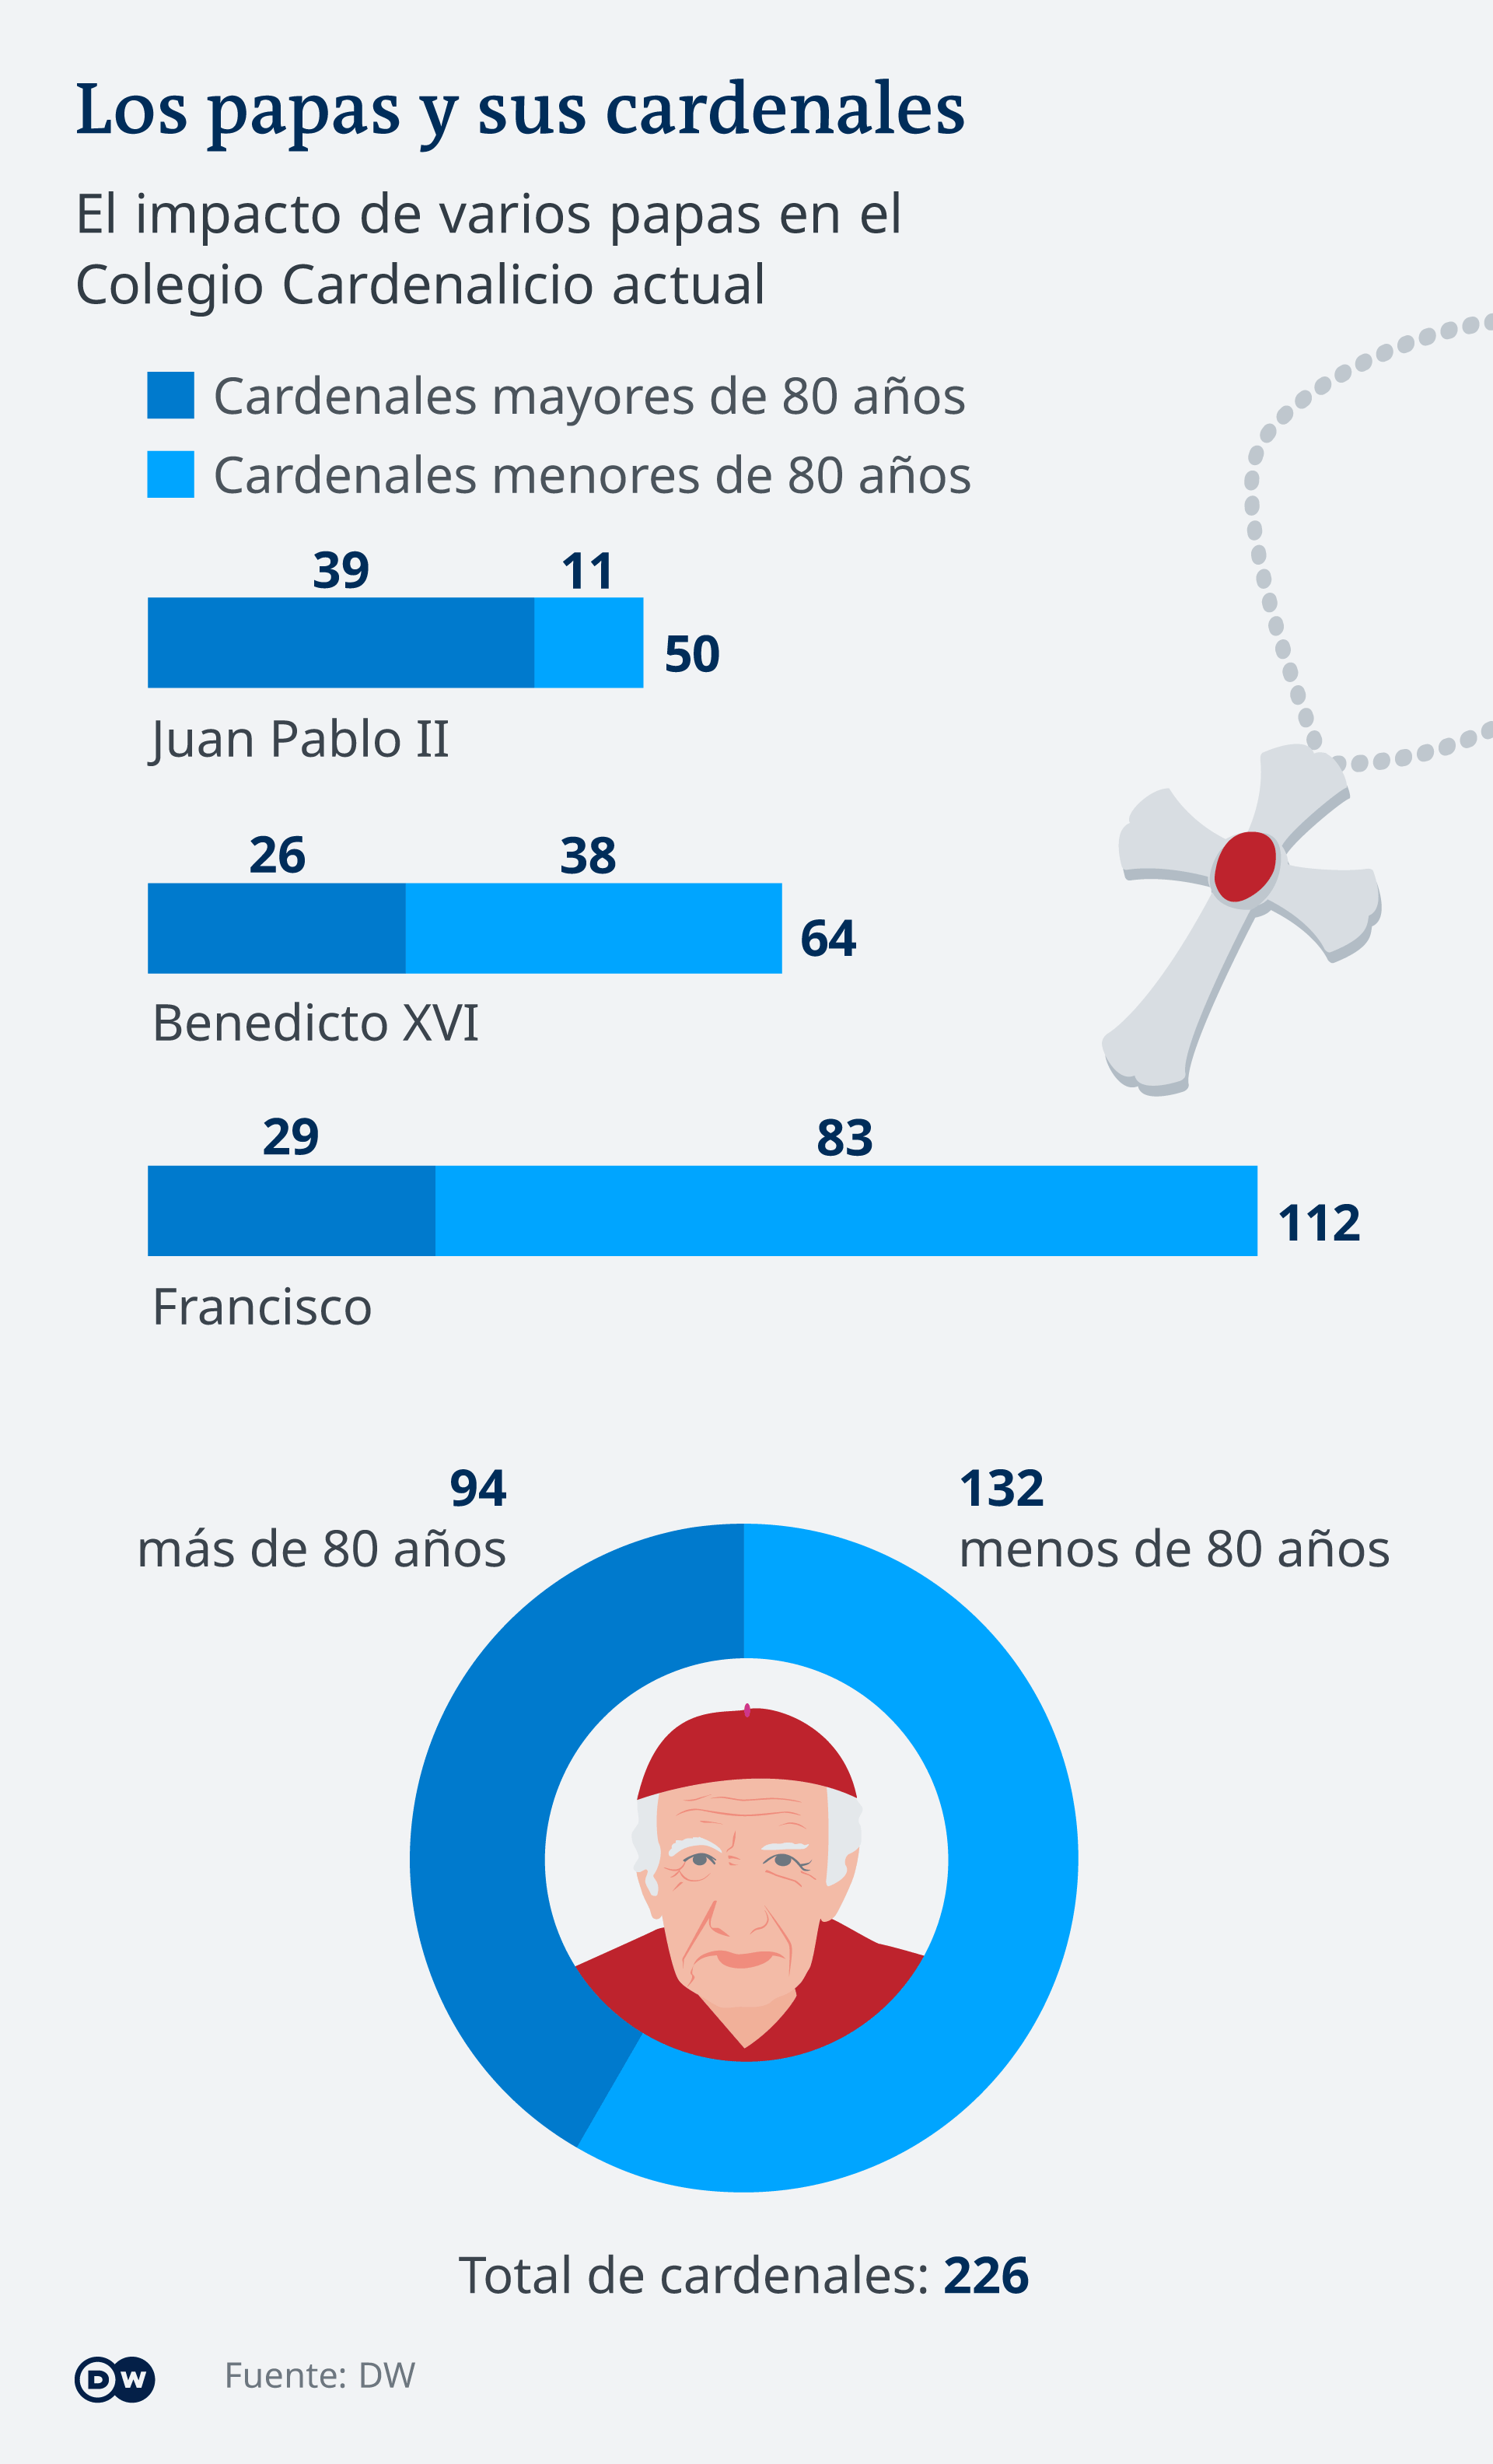 Los papas y sus cardenales: infografía.